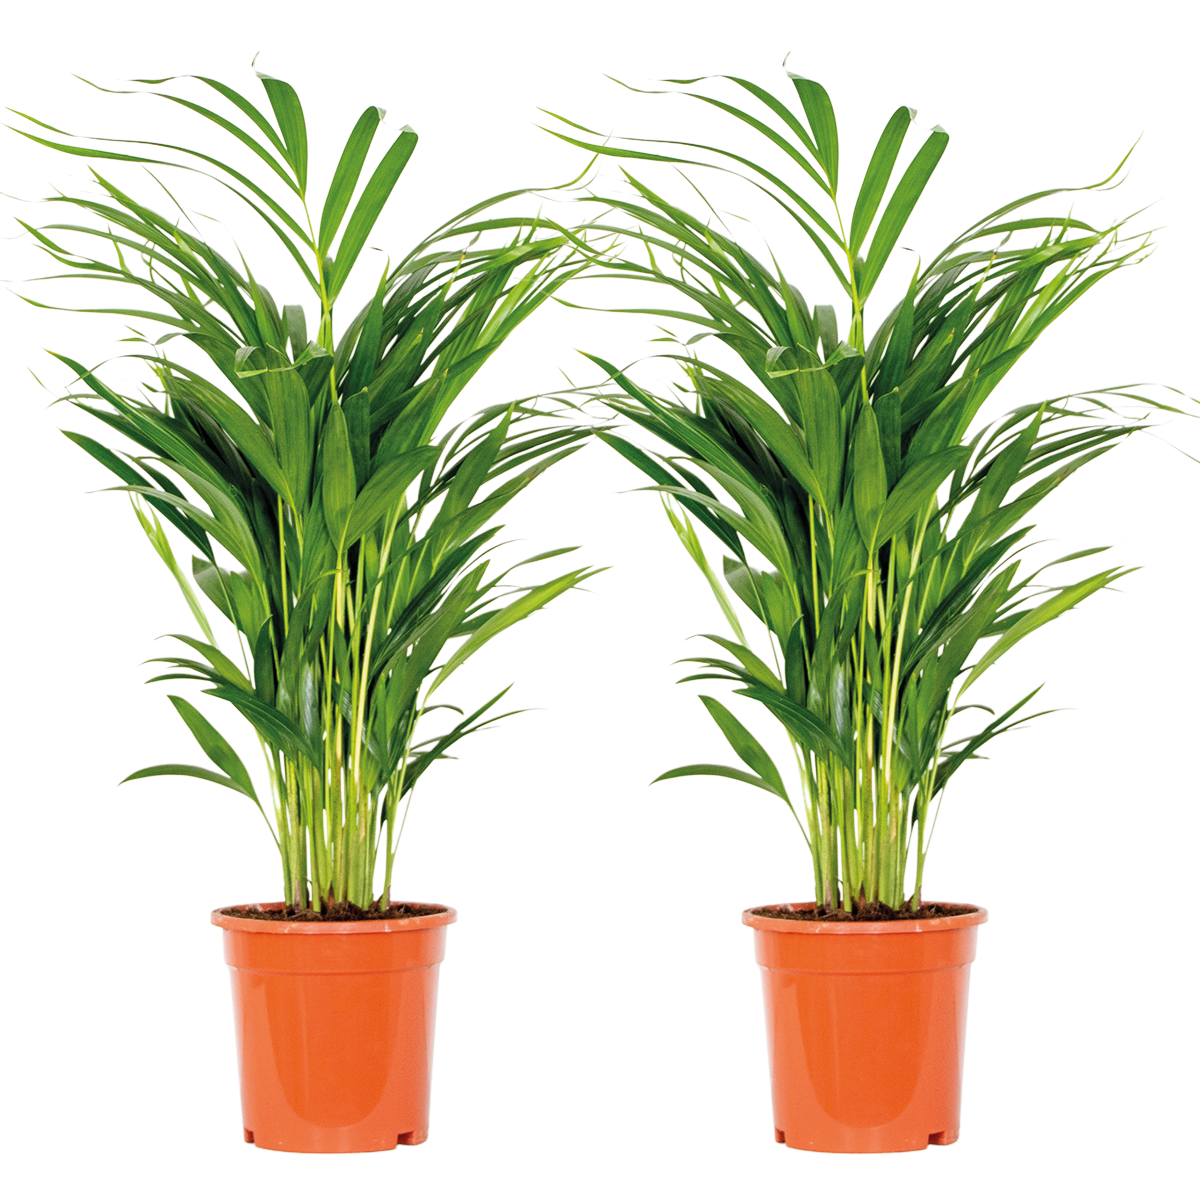 2x dypsis lutescens - palmier doré - plante d'intérieur - facile d'entretien - ⌀17 cm - ↕60-70 cm